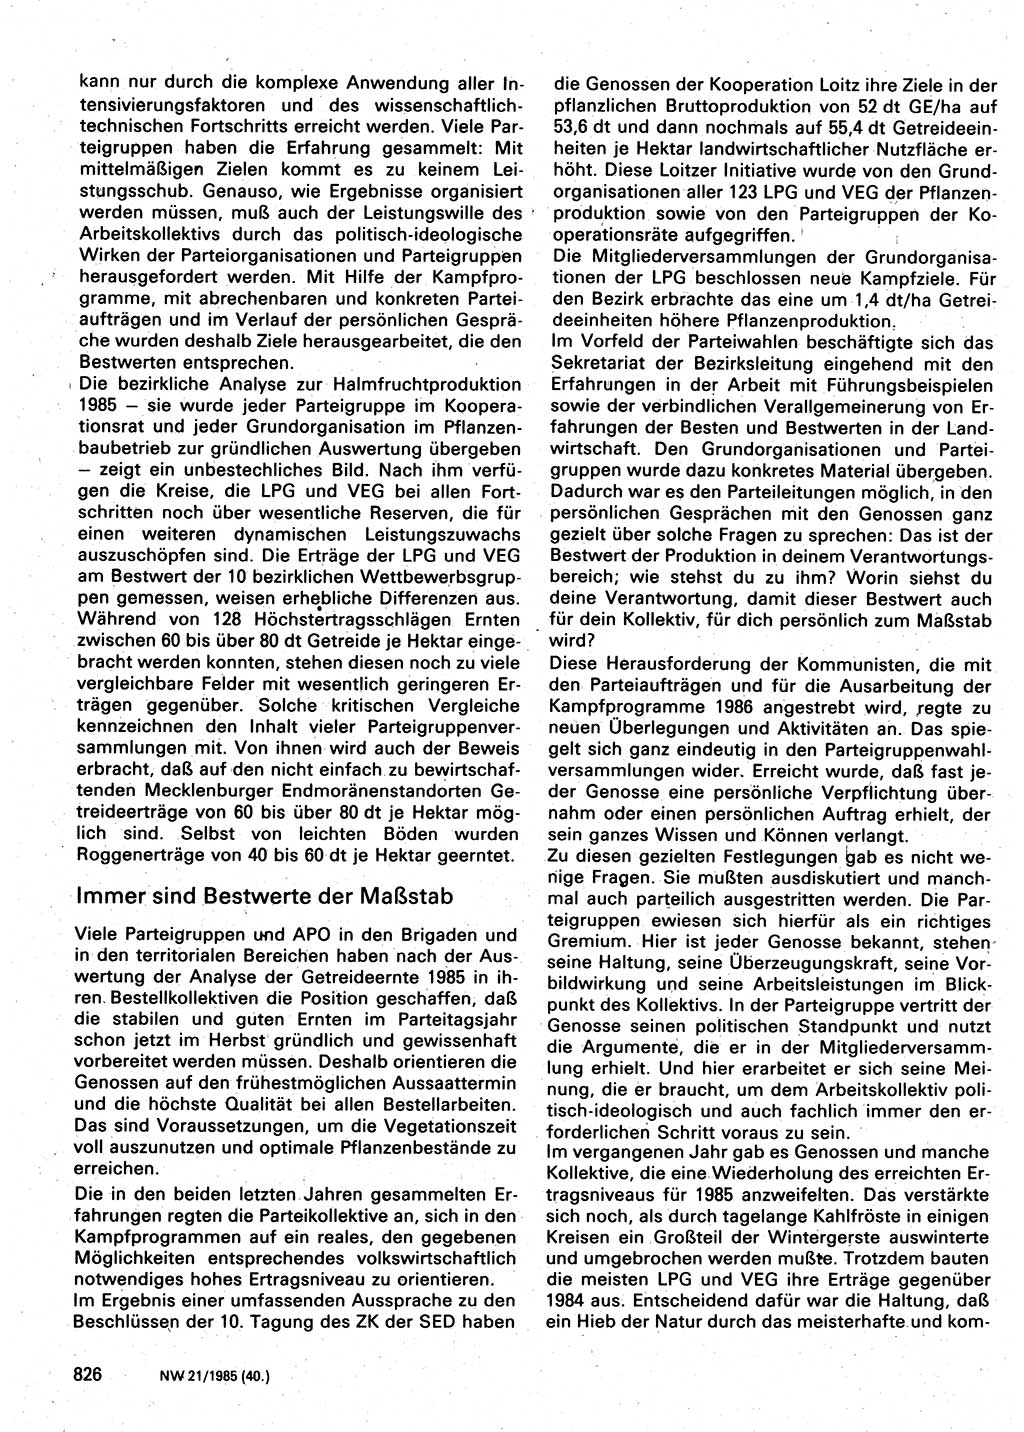 Neuer Weg (NW), Organ des Zentralkomitees (ZK) der SED (Sozialistische Einheitspartei Deutschlands) für Fragen des Parteilebens, 40. Jahrgang [Deutsche Demokratische Republik (DDR)] 1985, Seite 826 (NW ZK SED DDR 1985, S. 826)